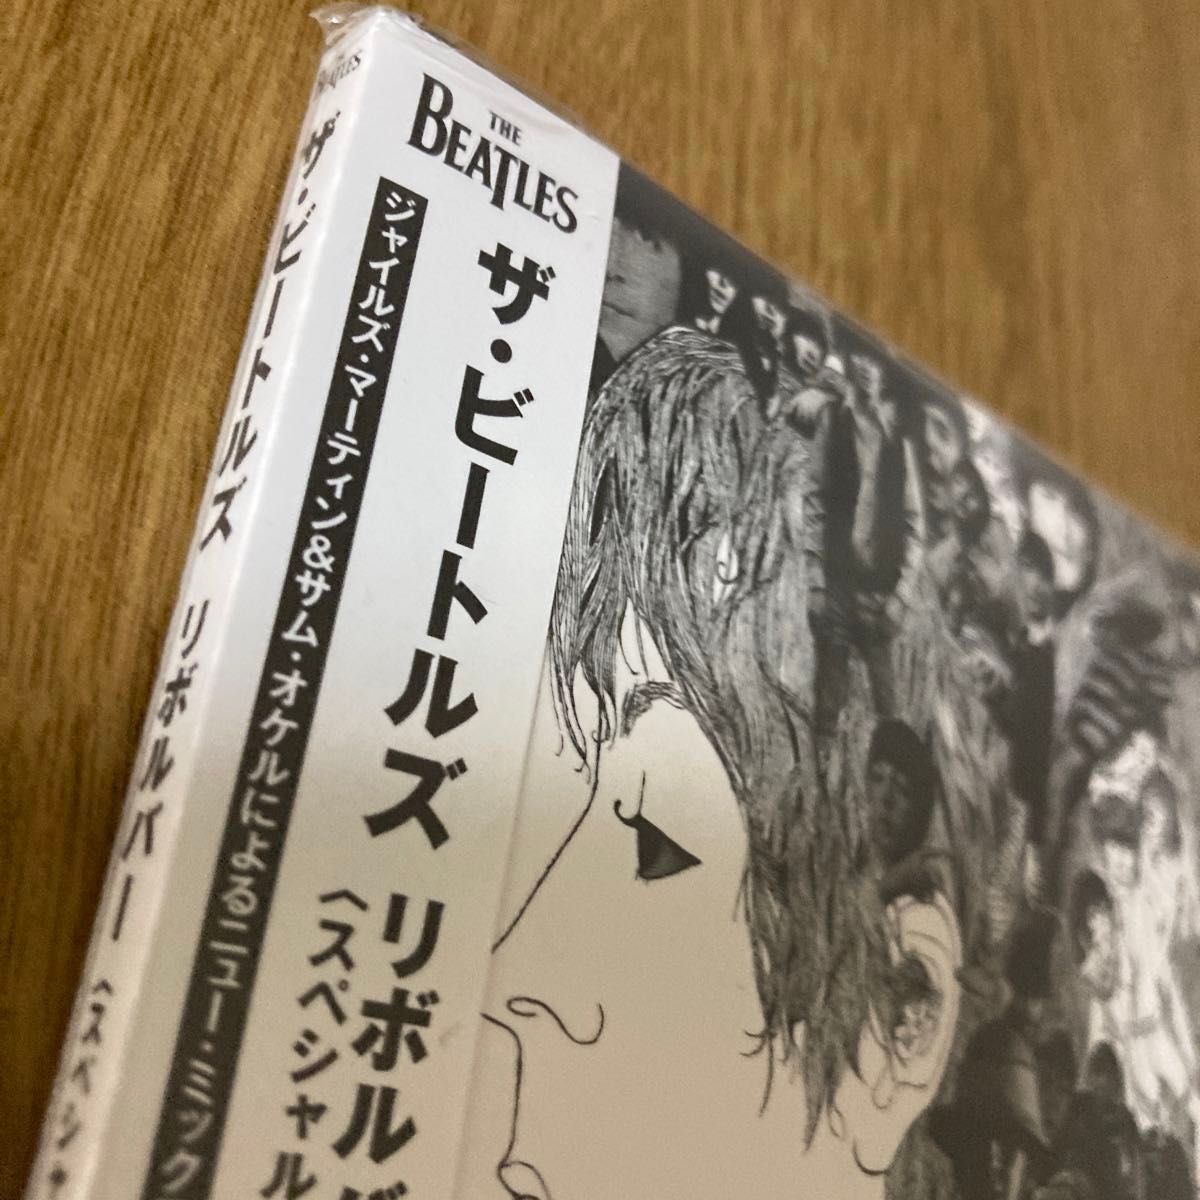 SHM-CD/リボルバー (スペシャルエディション [1CD])★ビートルズ★ The Beatles